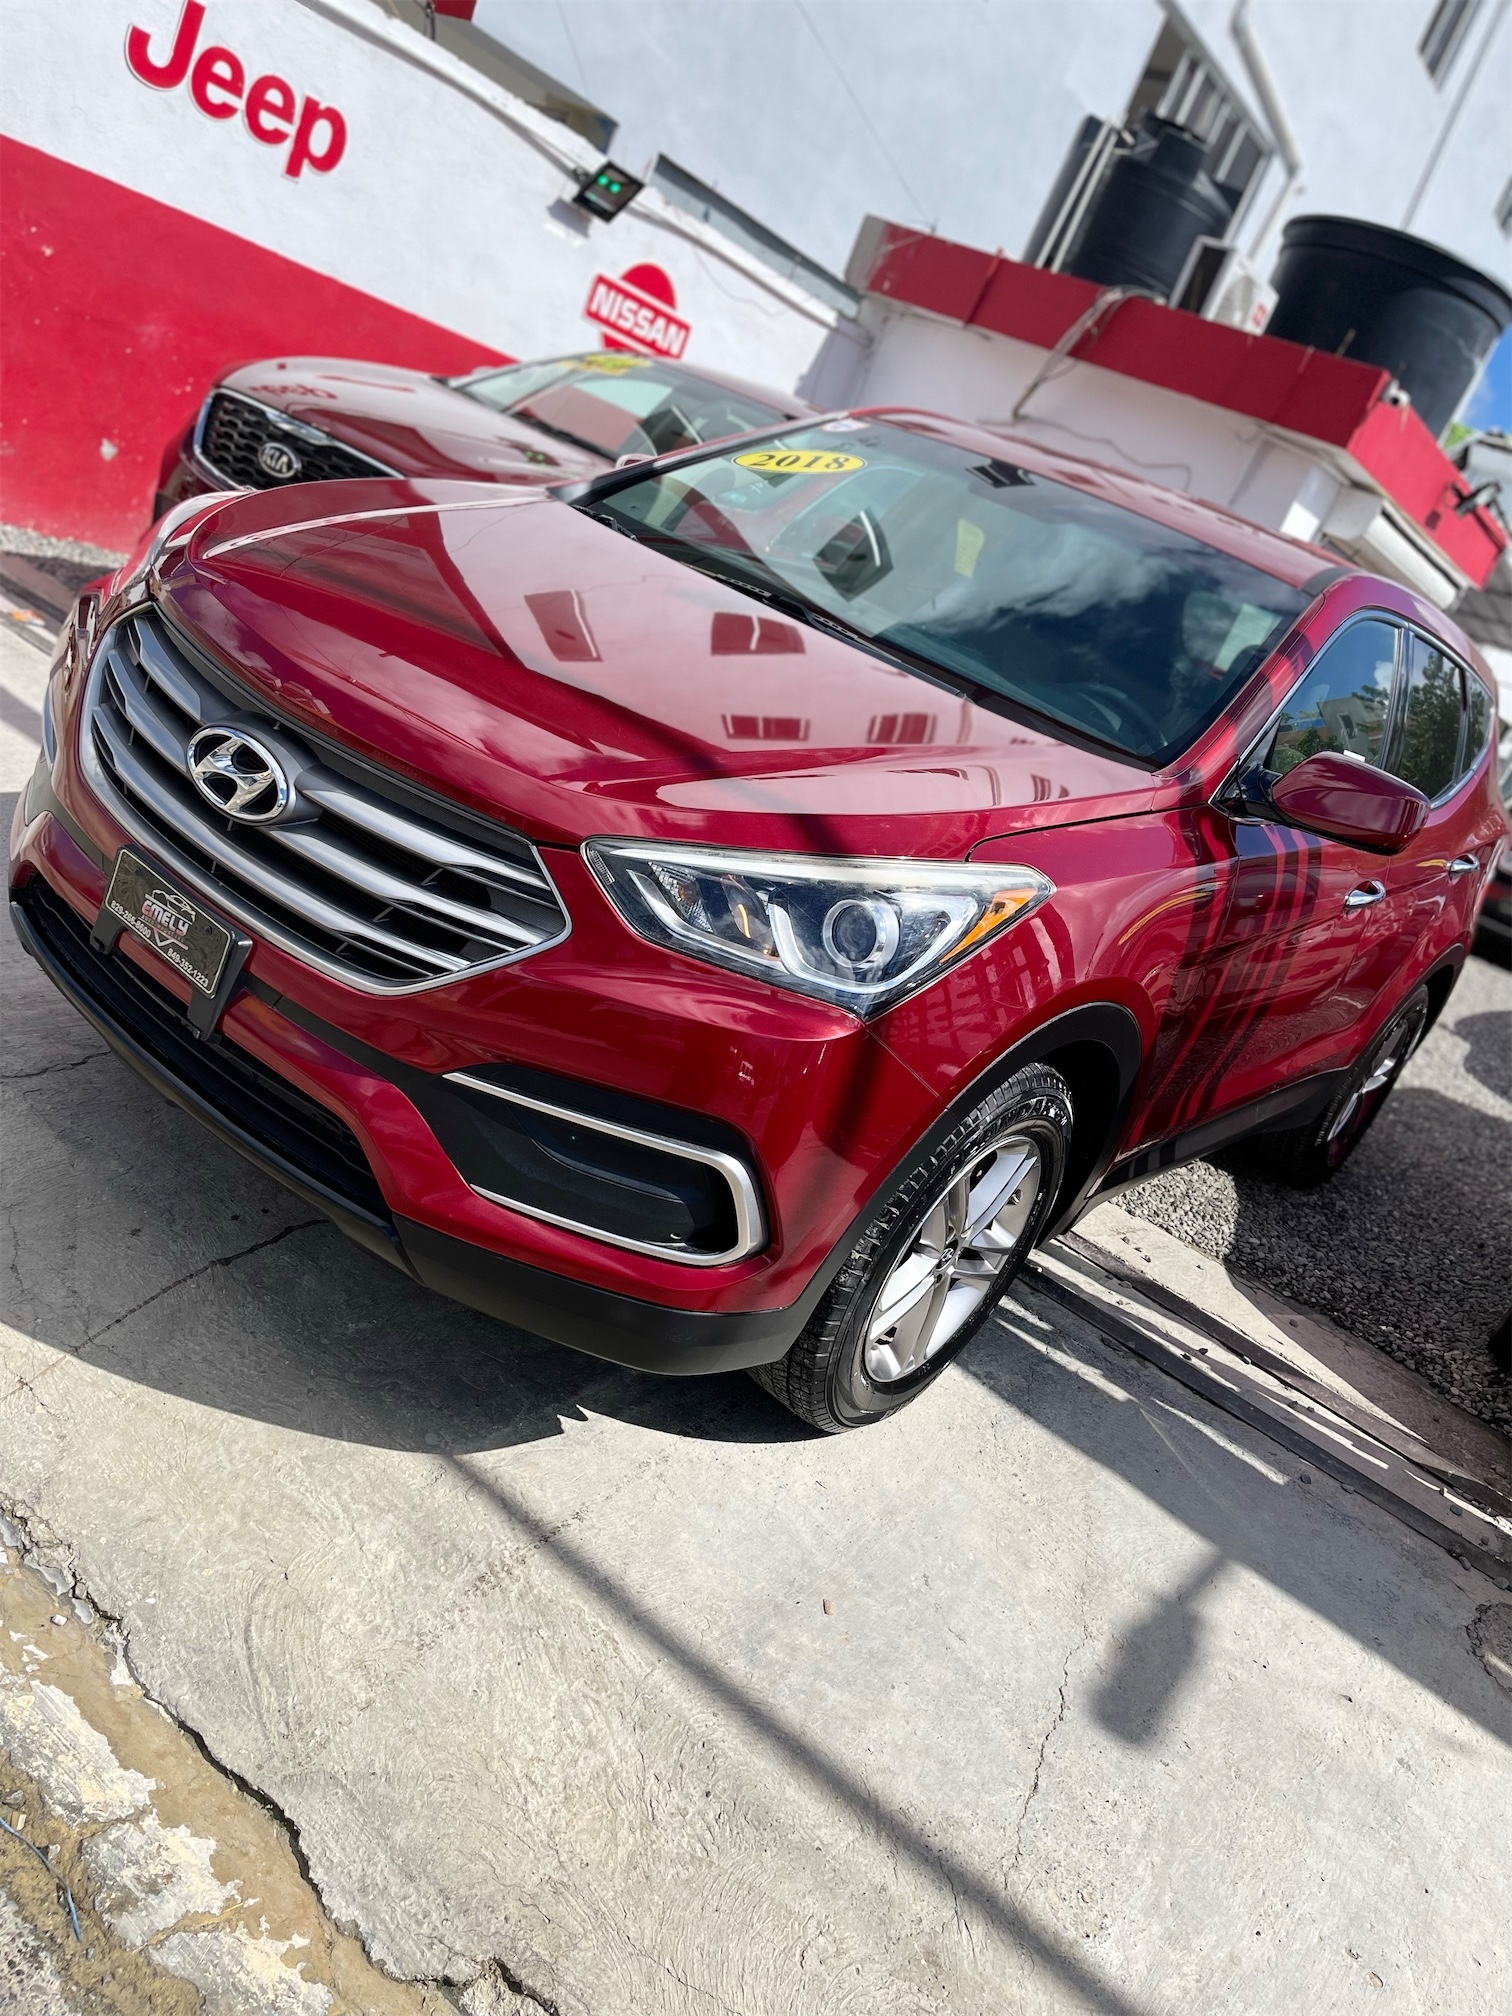 Hyundai Santa Fe 2018🔥$460,000🚨Financiamiento Disp💸No Importa Crédito💳Rec🚗